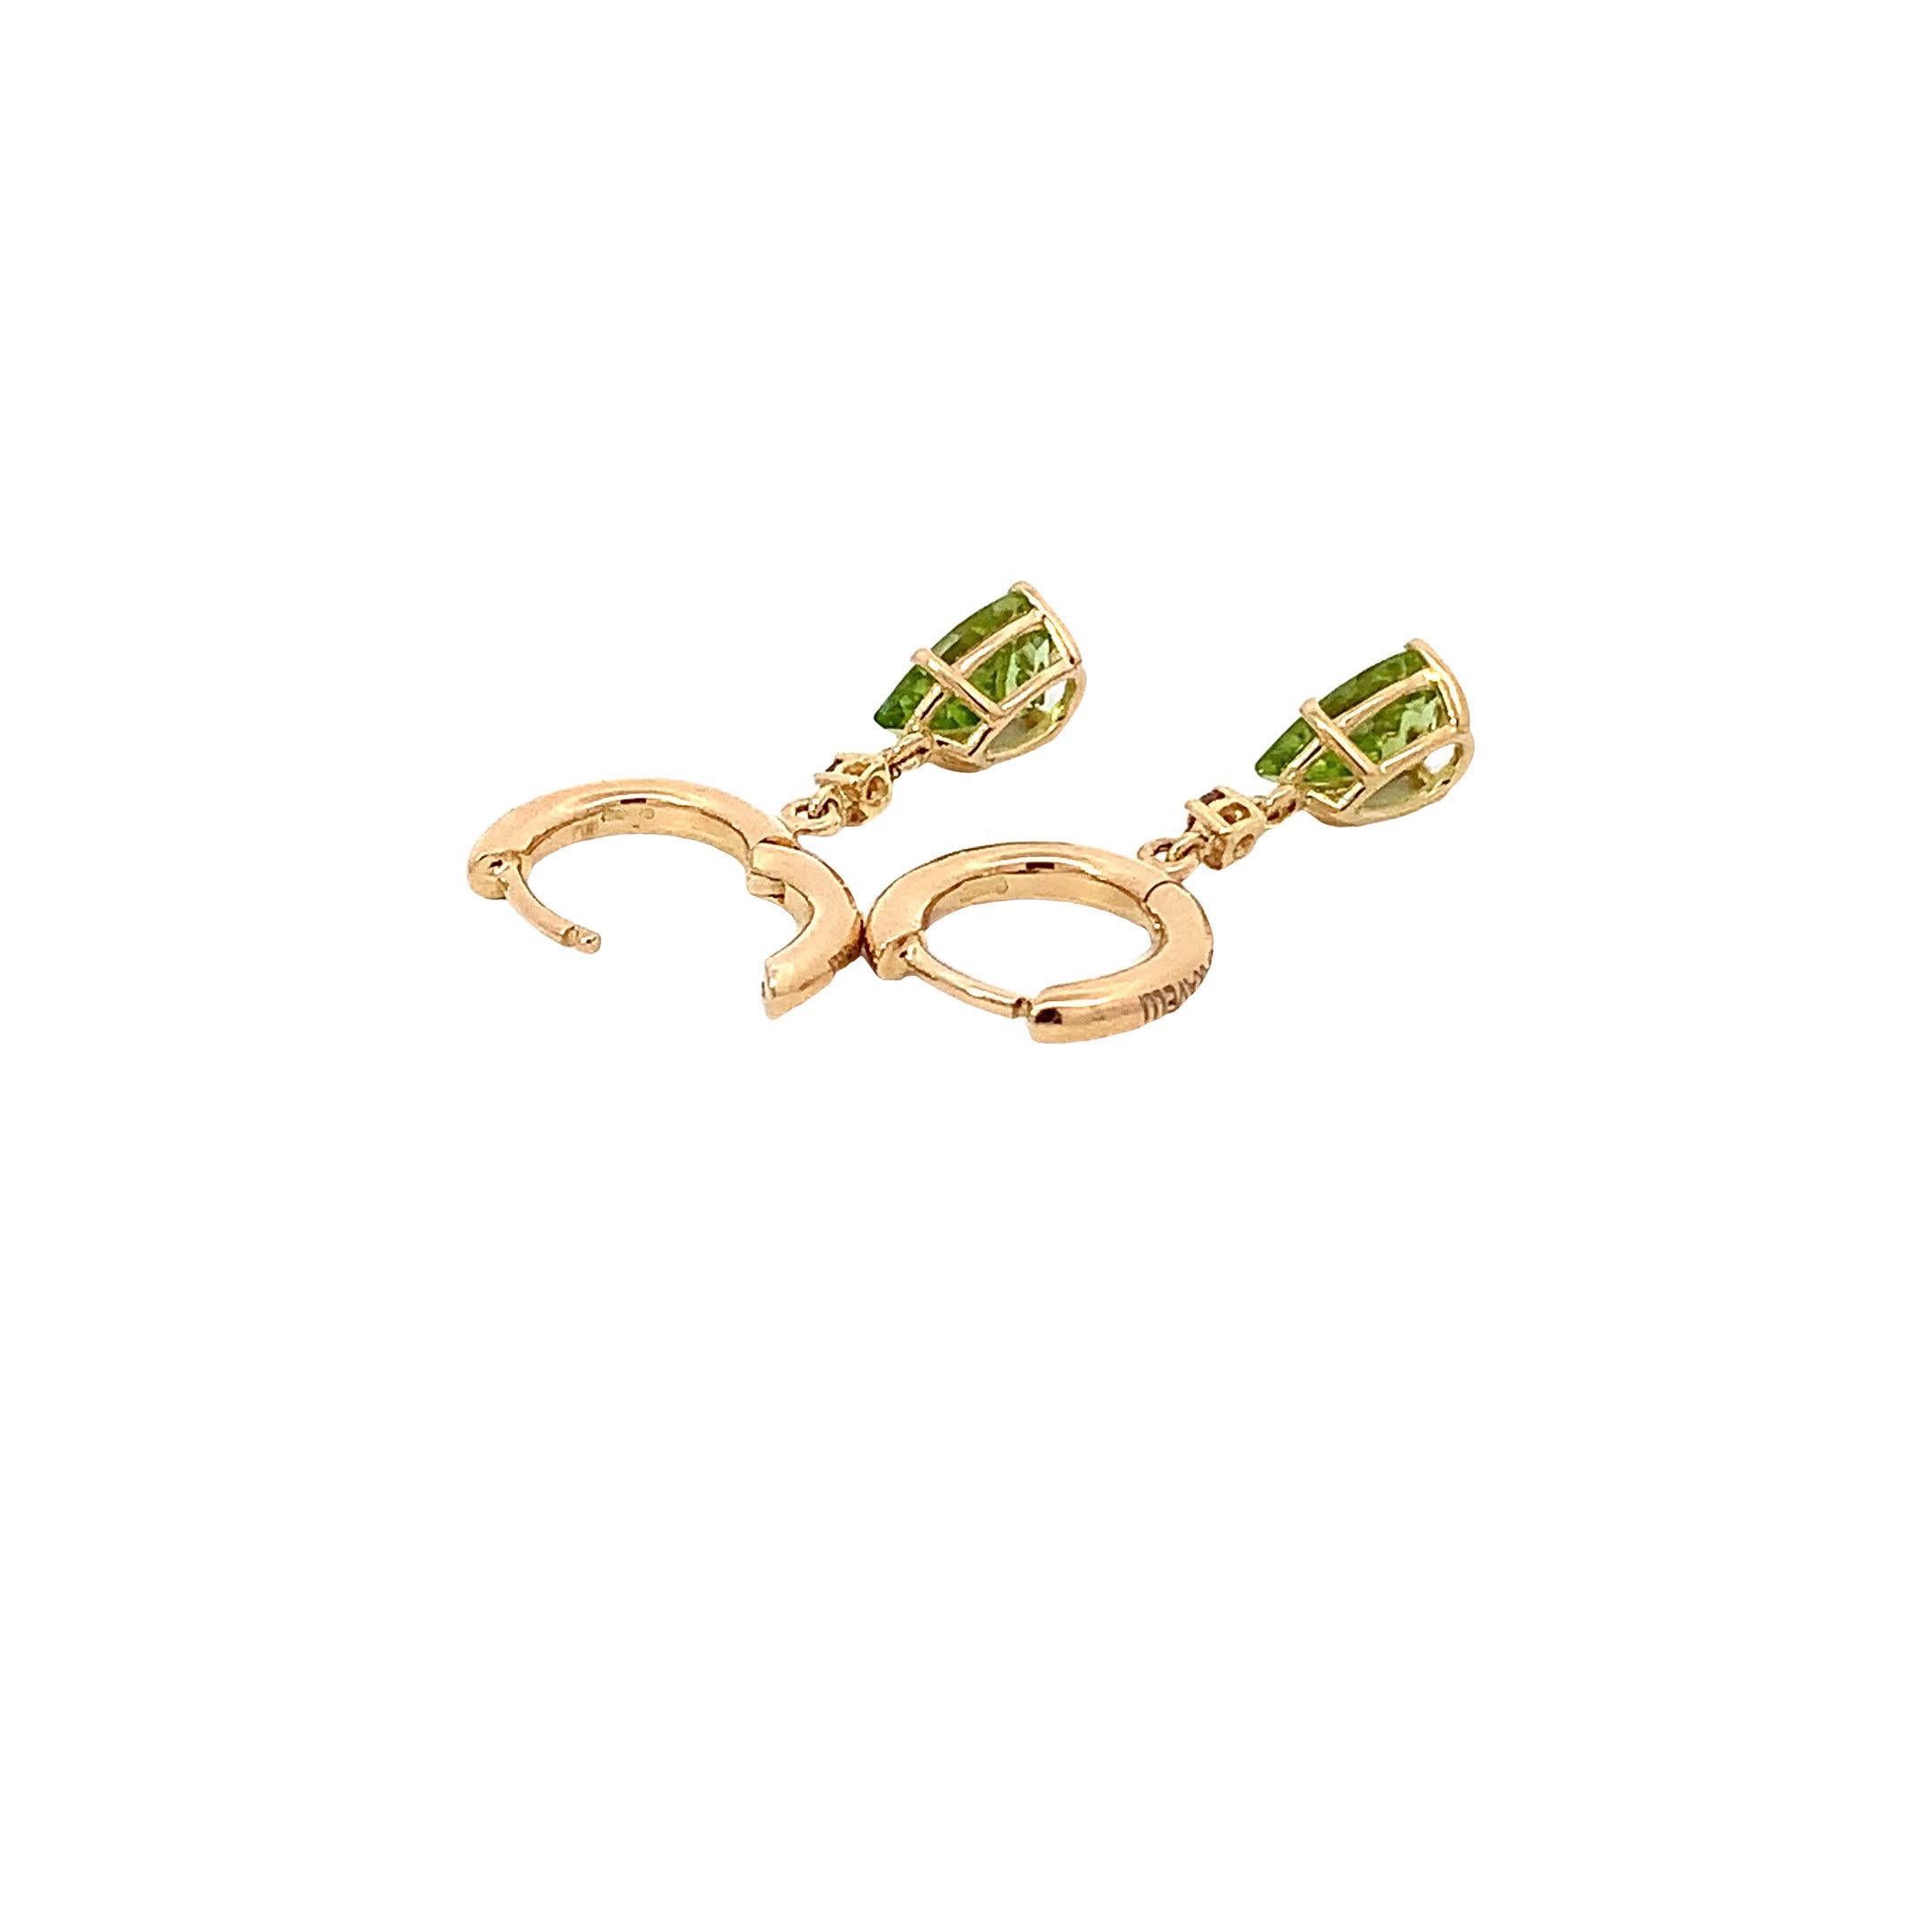 Erhöhen Sie Ihre Eleganz mit den Peridot-Tropfen aus 18 Karat Gelbgold  und  braune Diamanten Garavelli Hängeohrringe. Diese exquisiten, mit Präzision und Stil gefertigten Ohrringe sind ein Zeugnis von Schönheit und Raffinesse.
Jeder Ohrring ist ein